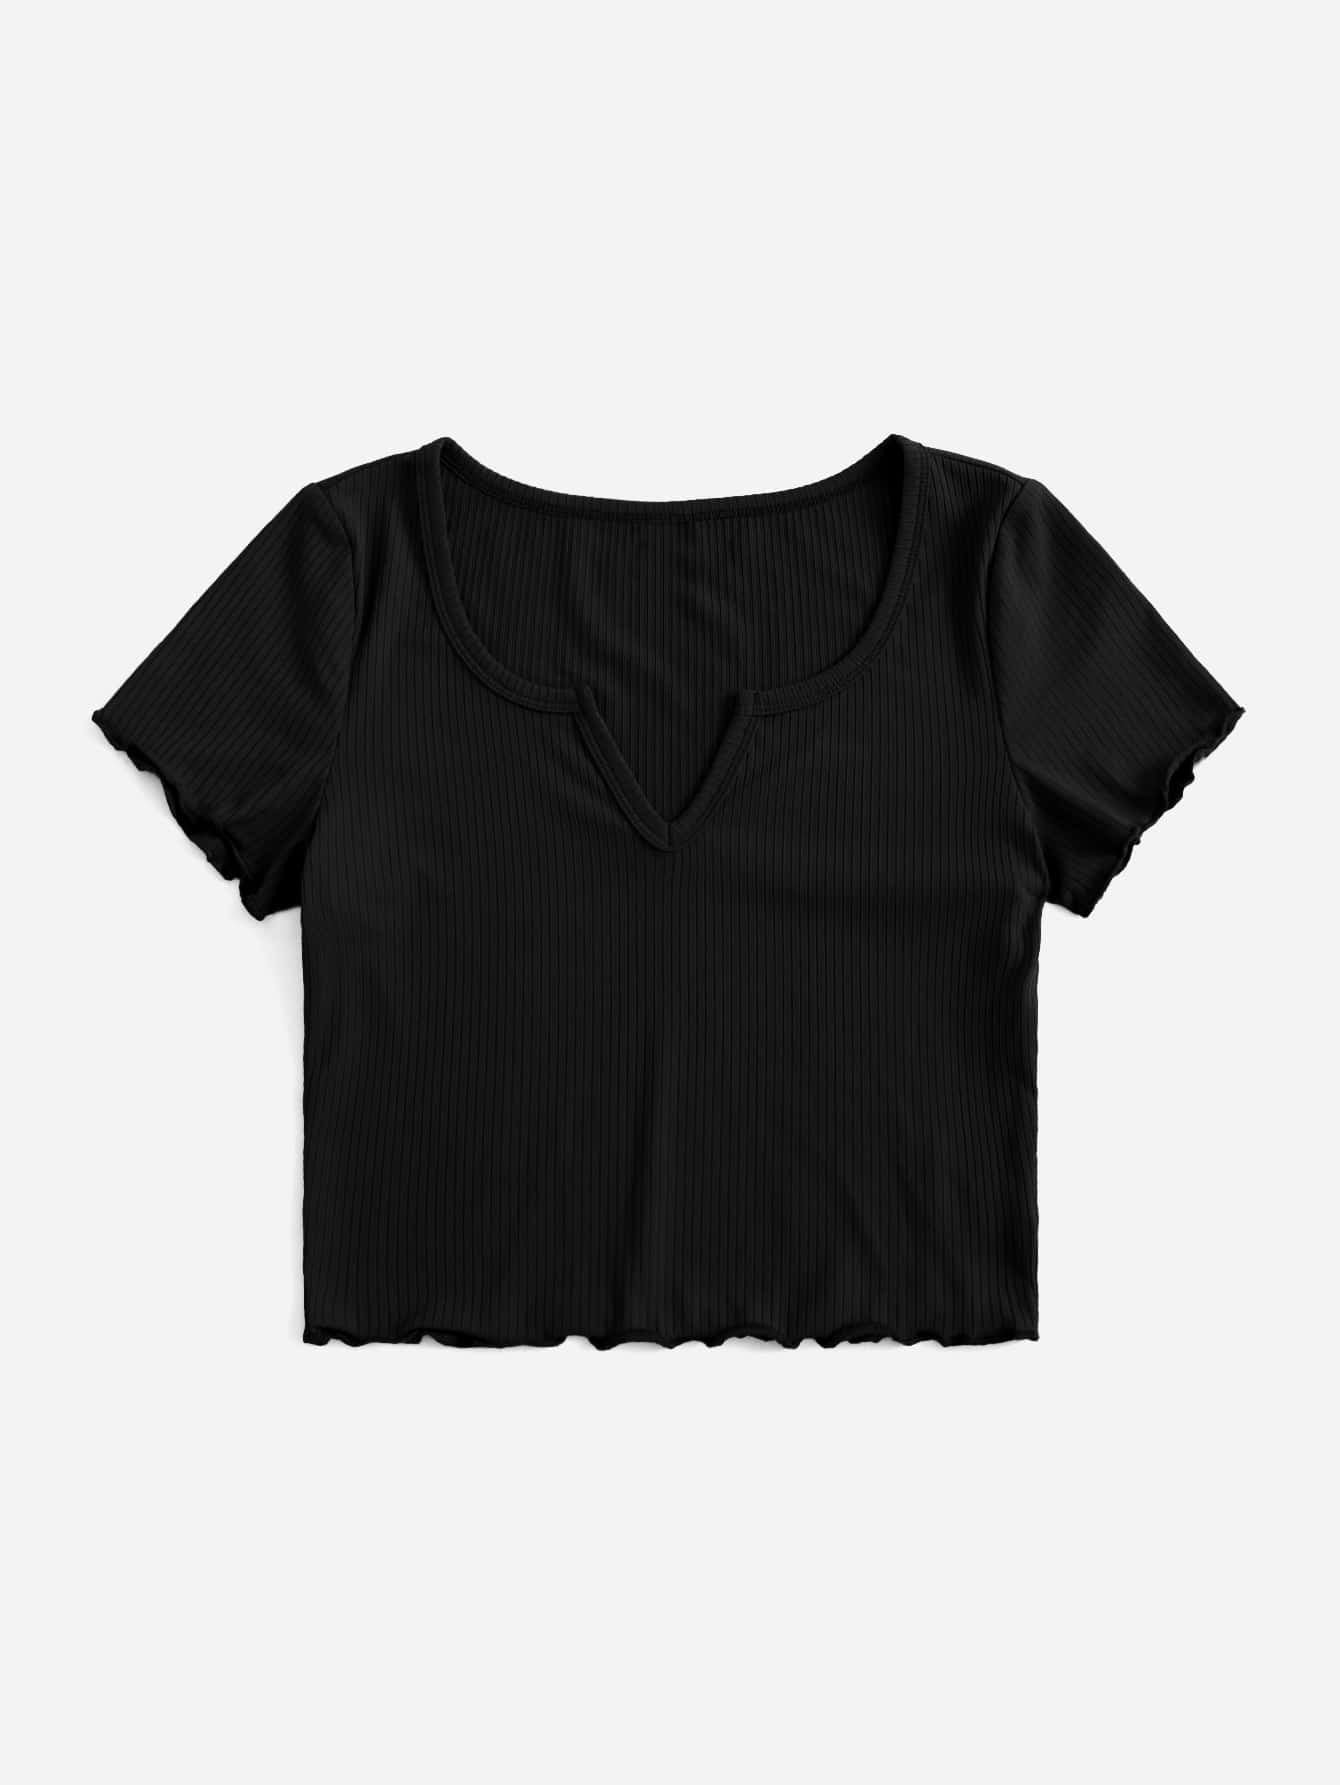 10237 a05-05 Camiseta de cuello notch ribete en forma de lechuga tejido de canalé